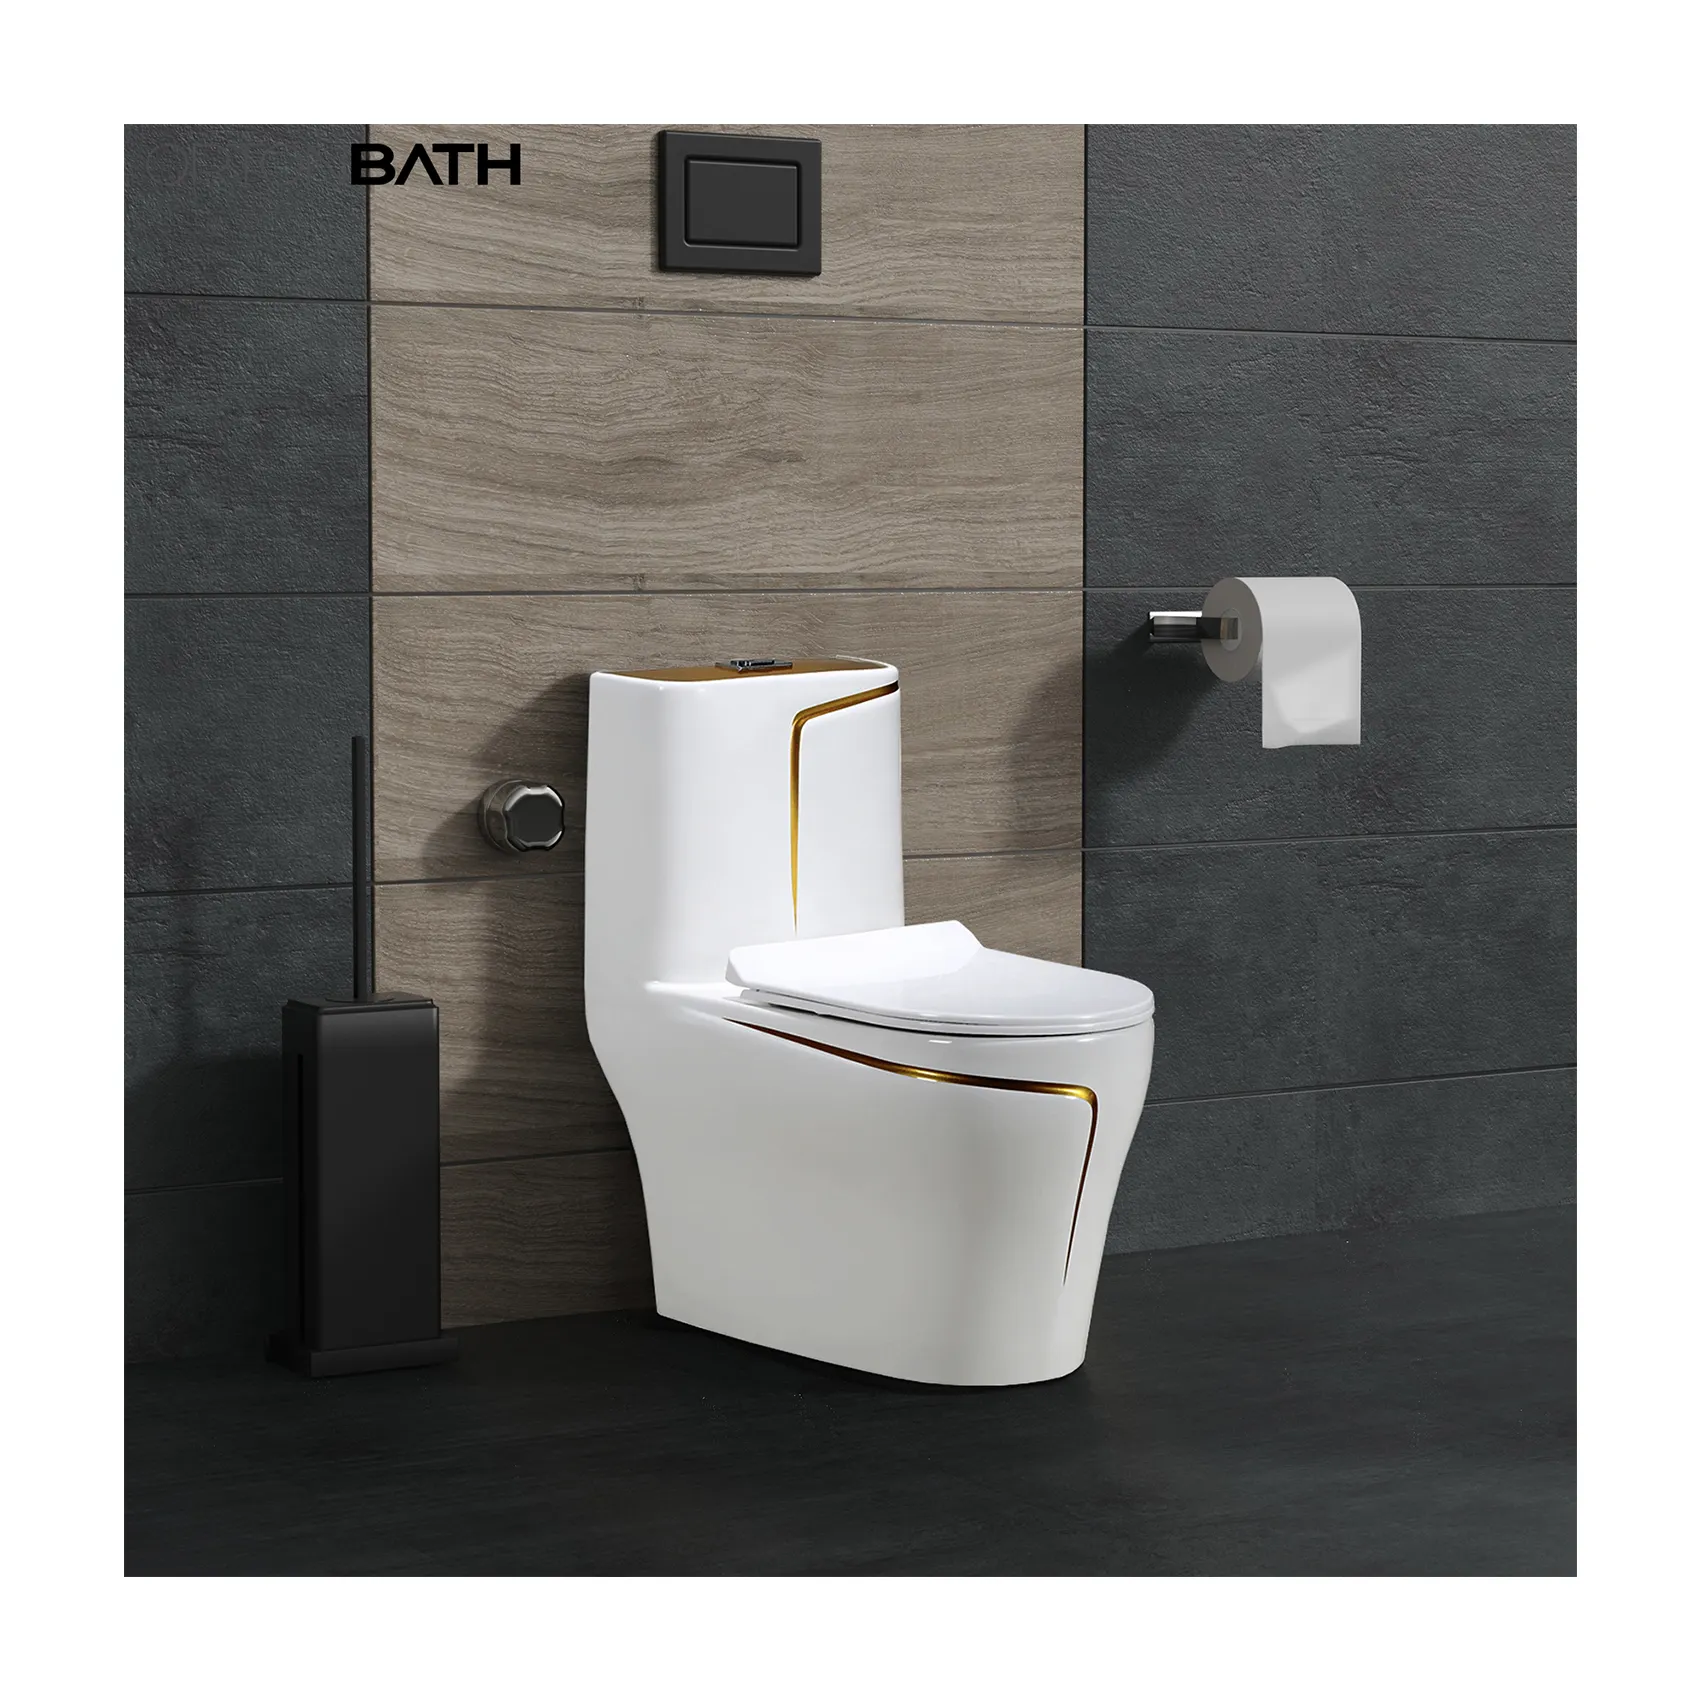 ORTONBATH Golden Line galvanotecnica Grey Toilet Bowl 1 pezzo Wc Wc Wc Wc e accessori in ceramica